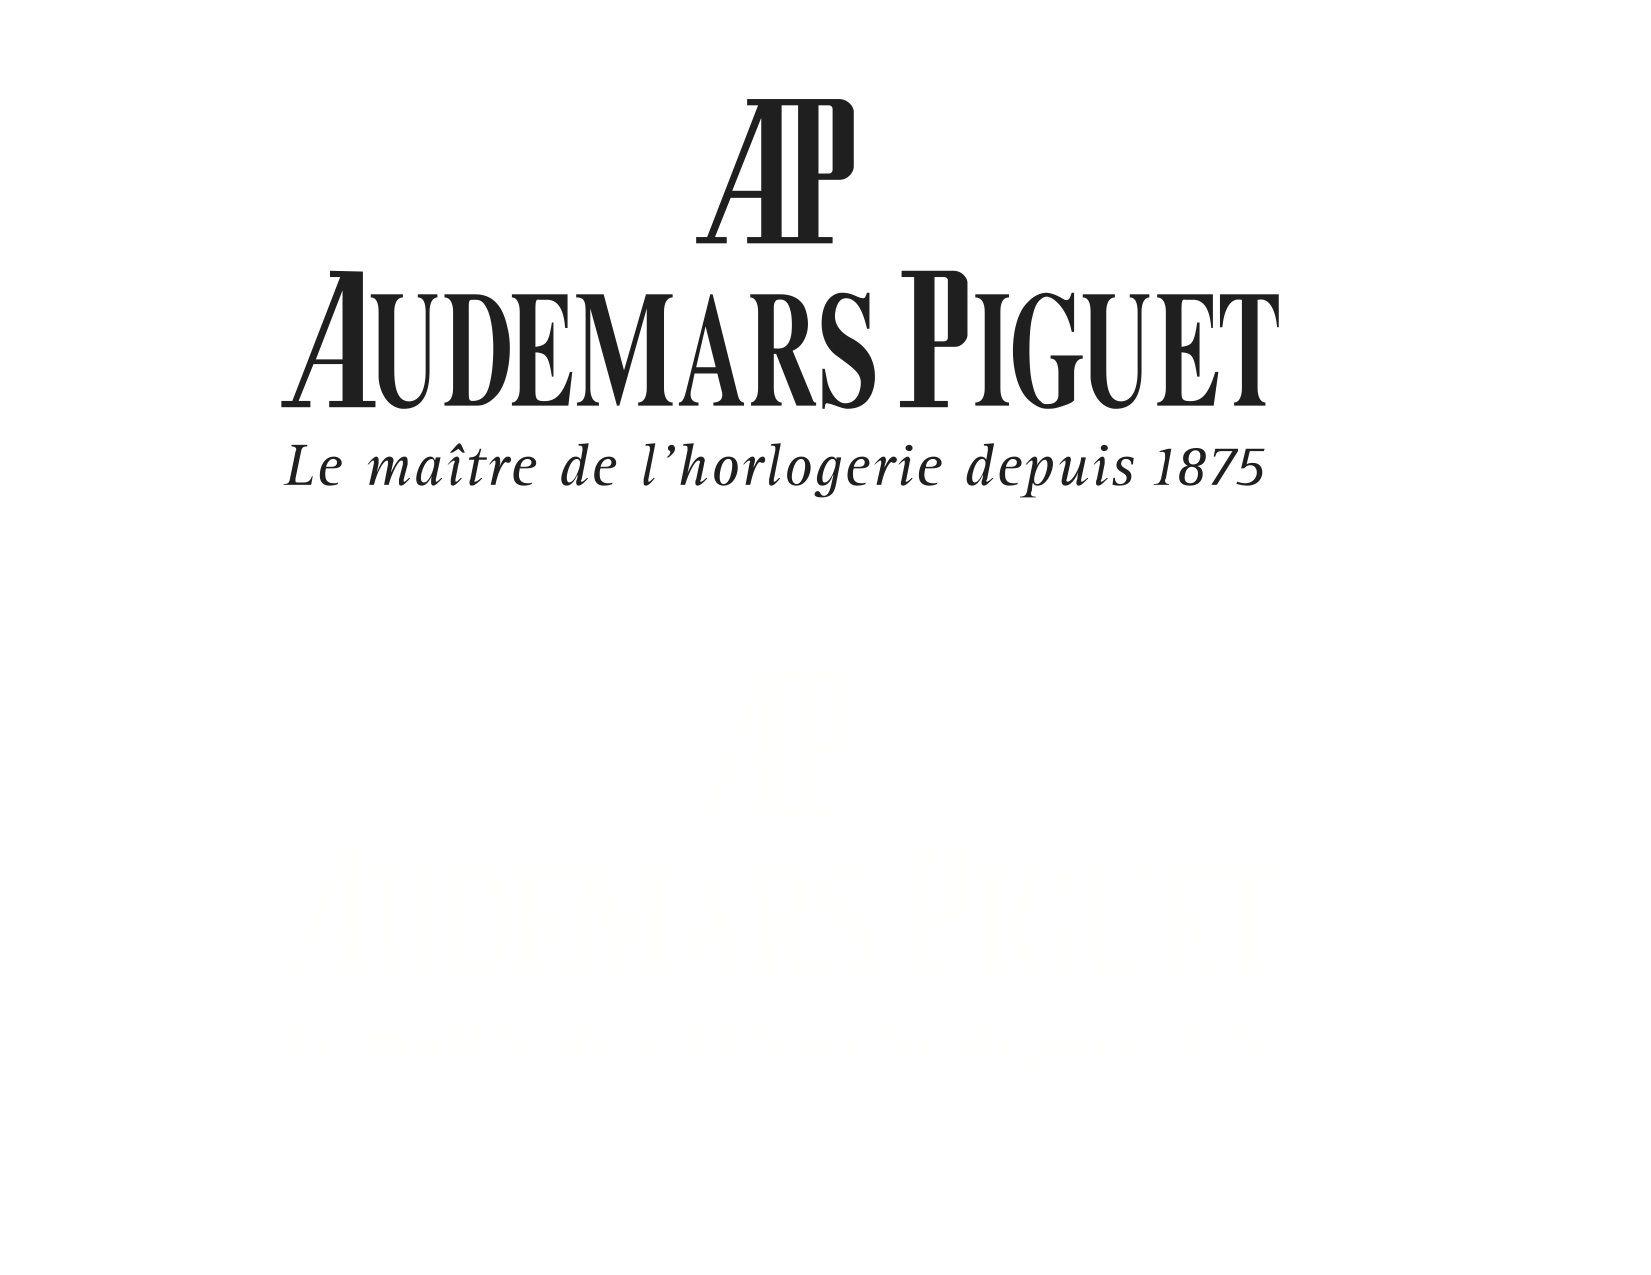 AP Watch Logo - Audemars piguet Logos